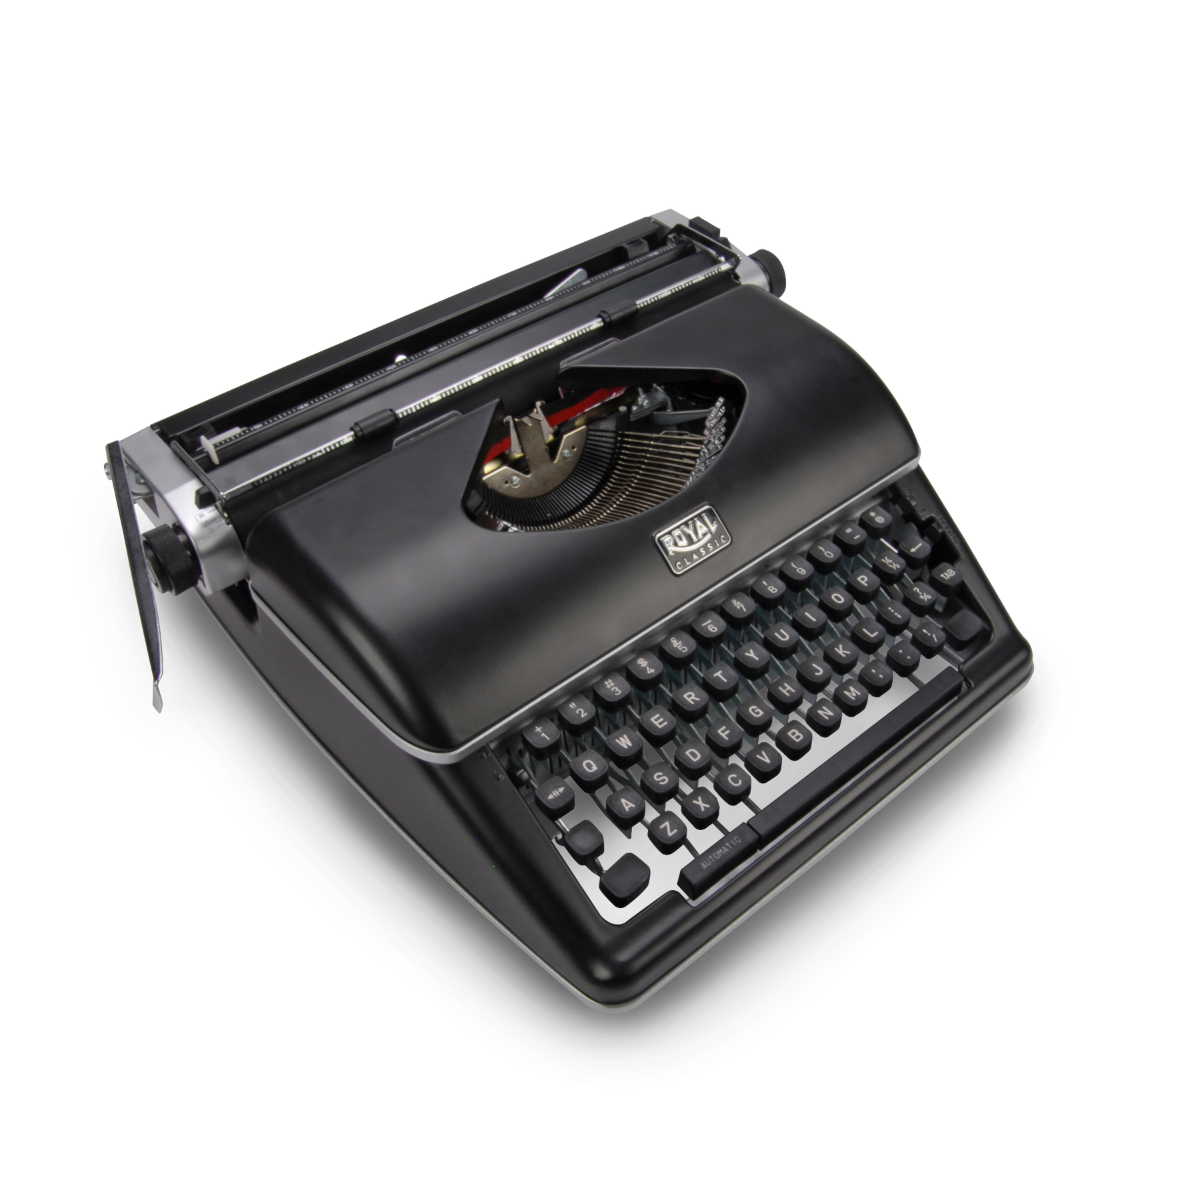 Royal Classic Manual Typewriter Black 79104P - Best Buy